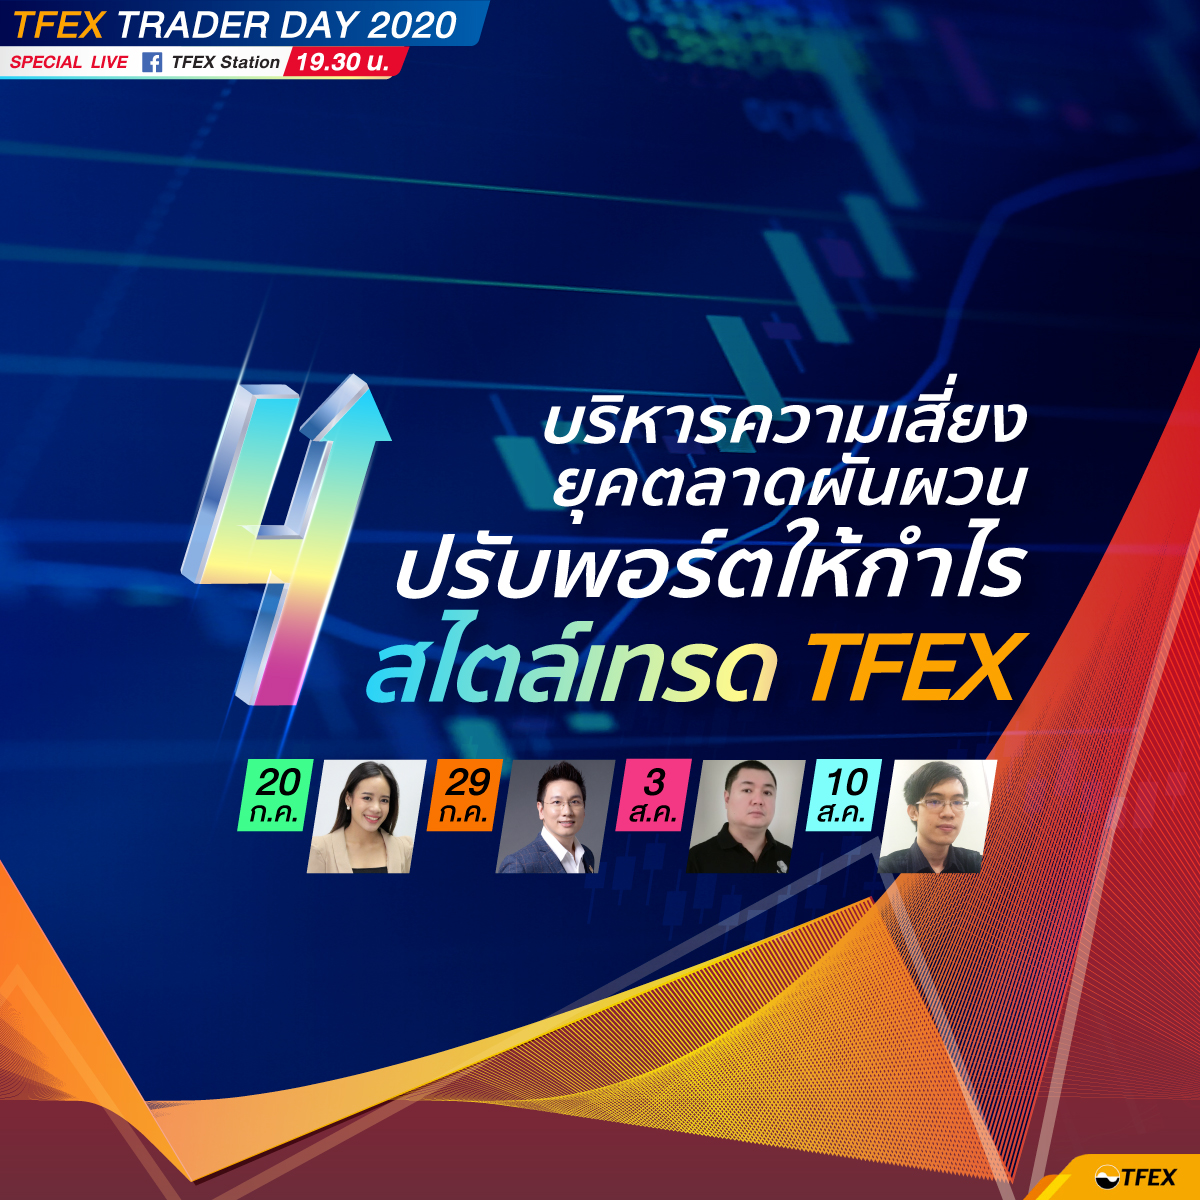 บมจ. ตลาดสัญญาซื้อขายล่วงหน้า (ประเทศไทย) ขอนำส่งข่าวสั้น ยุคตลาดผันผวน ไม่ตกขบวนทำกำไร หาคำตอบใน TFEX Trader Day LIVE Special 4 วัน 4 หัวข้อ